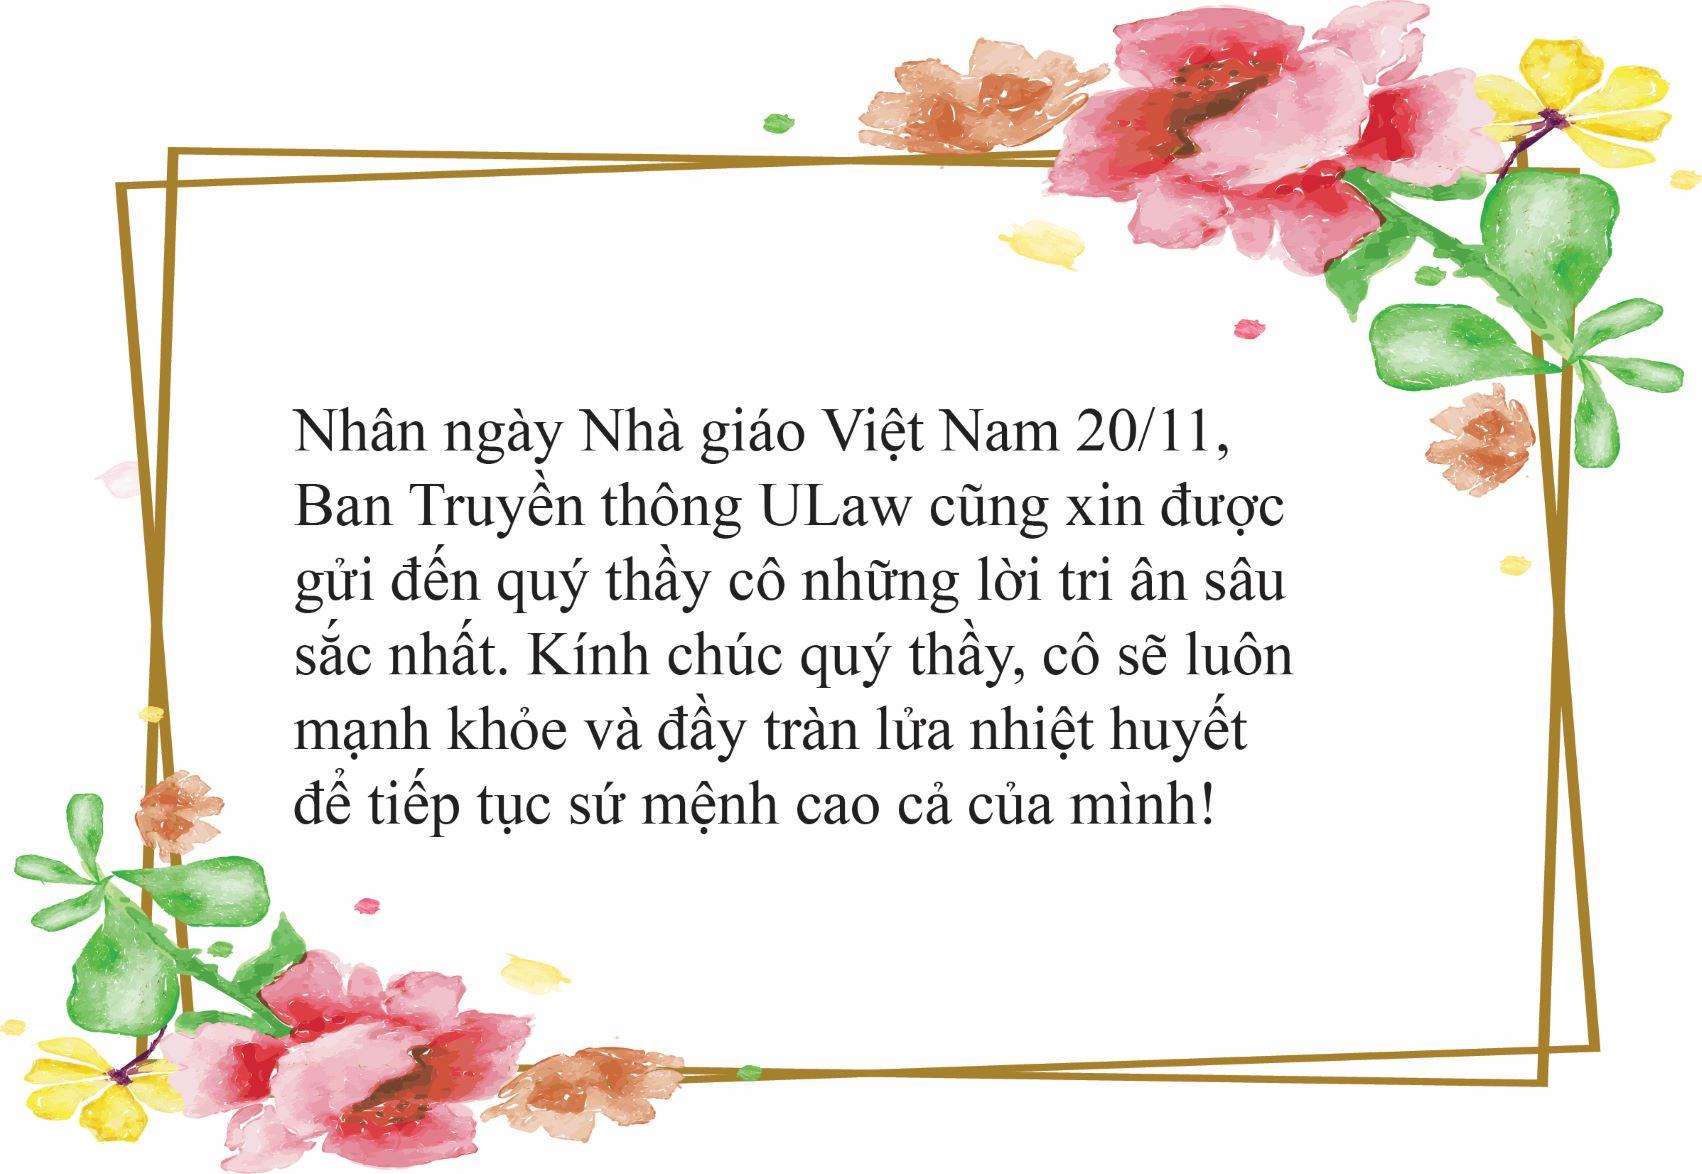 Hình ảnh chúc mừng ngày nhà giáo Việt Nam ý nghĩa